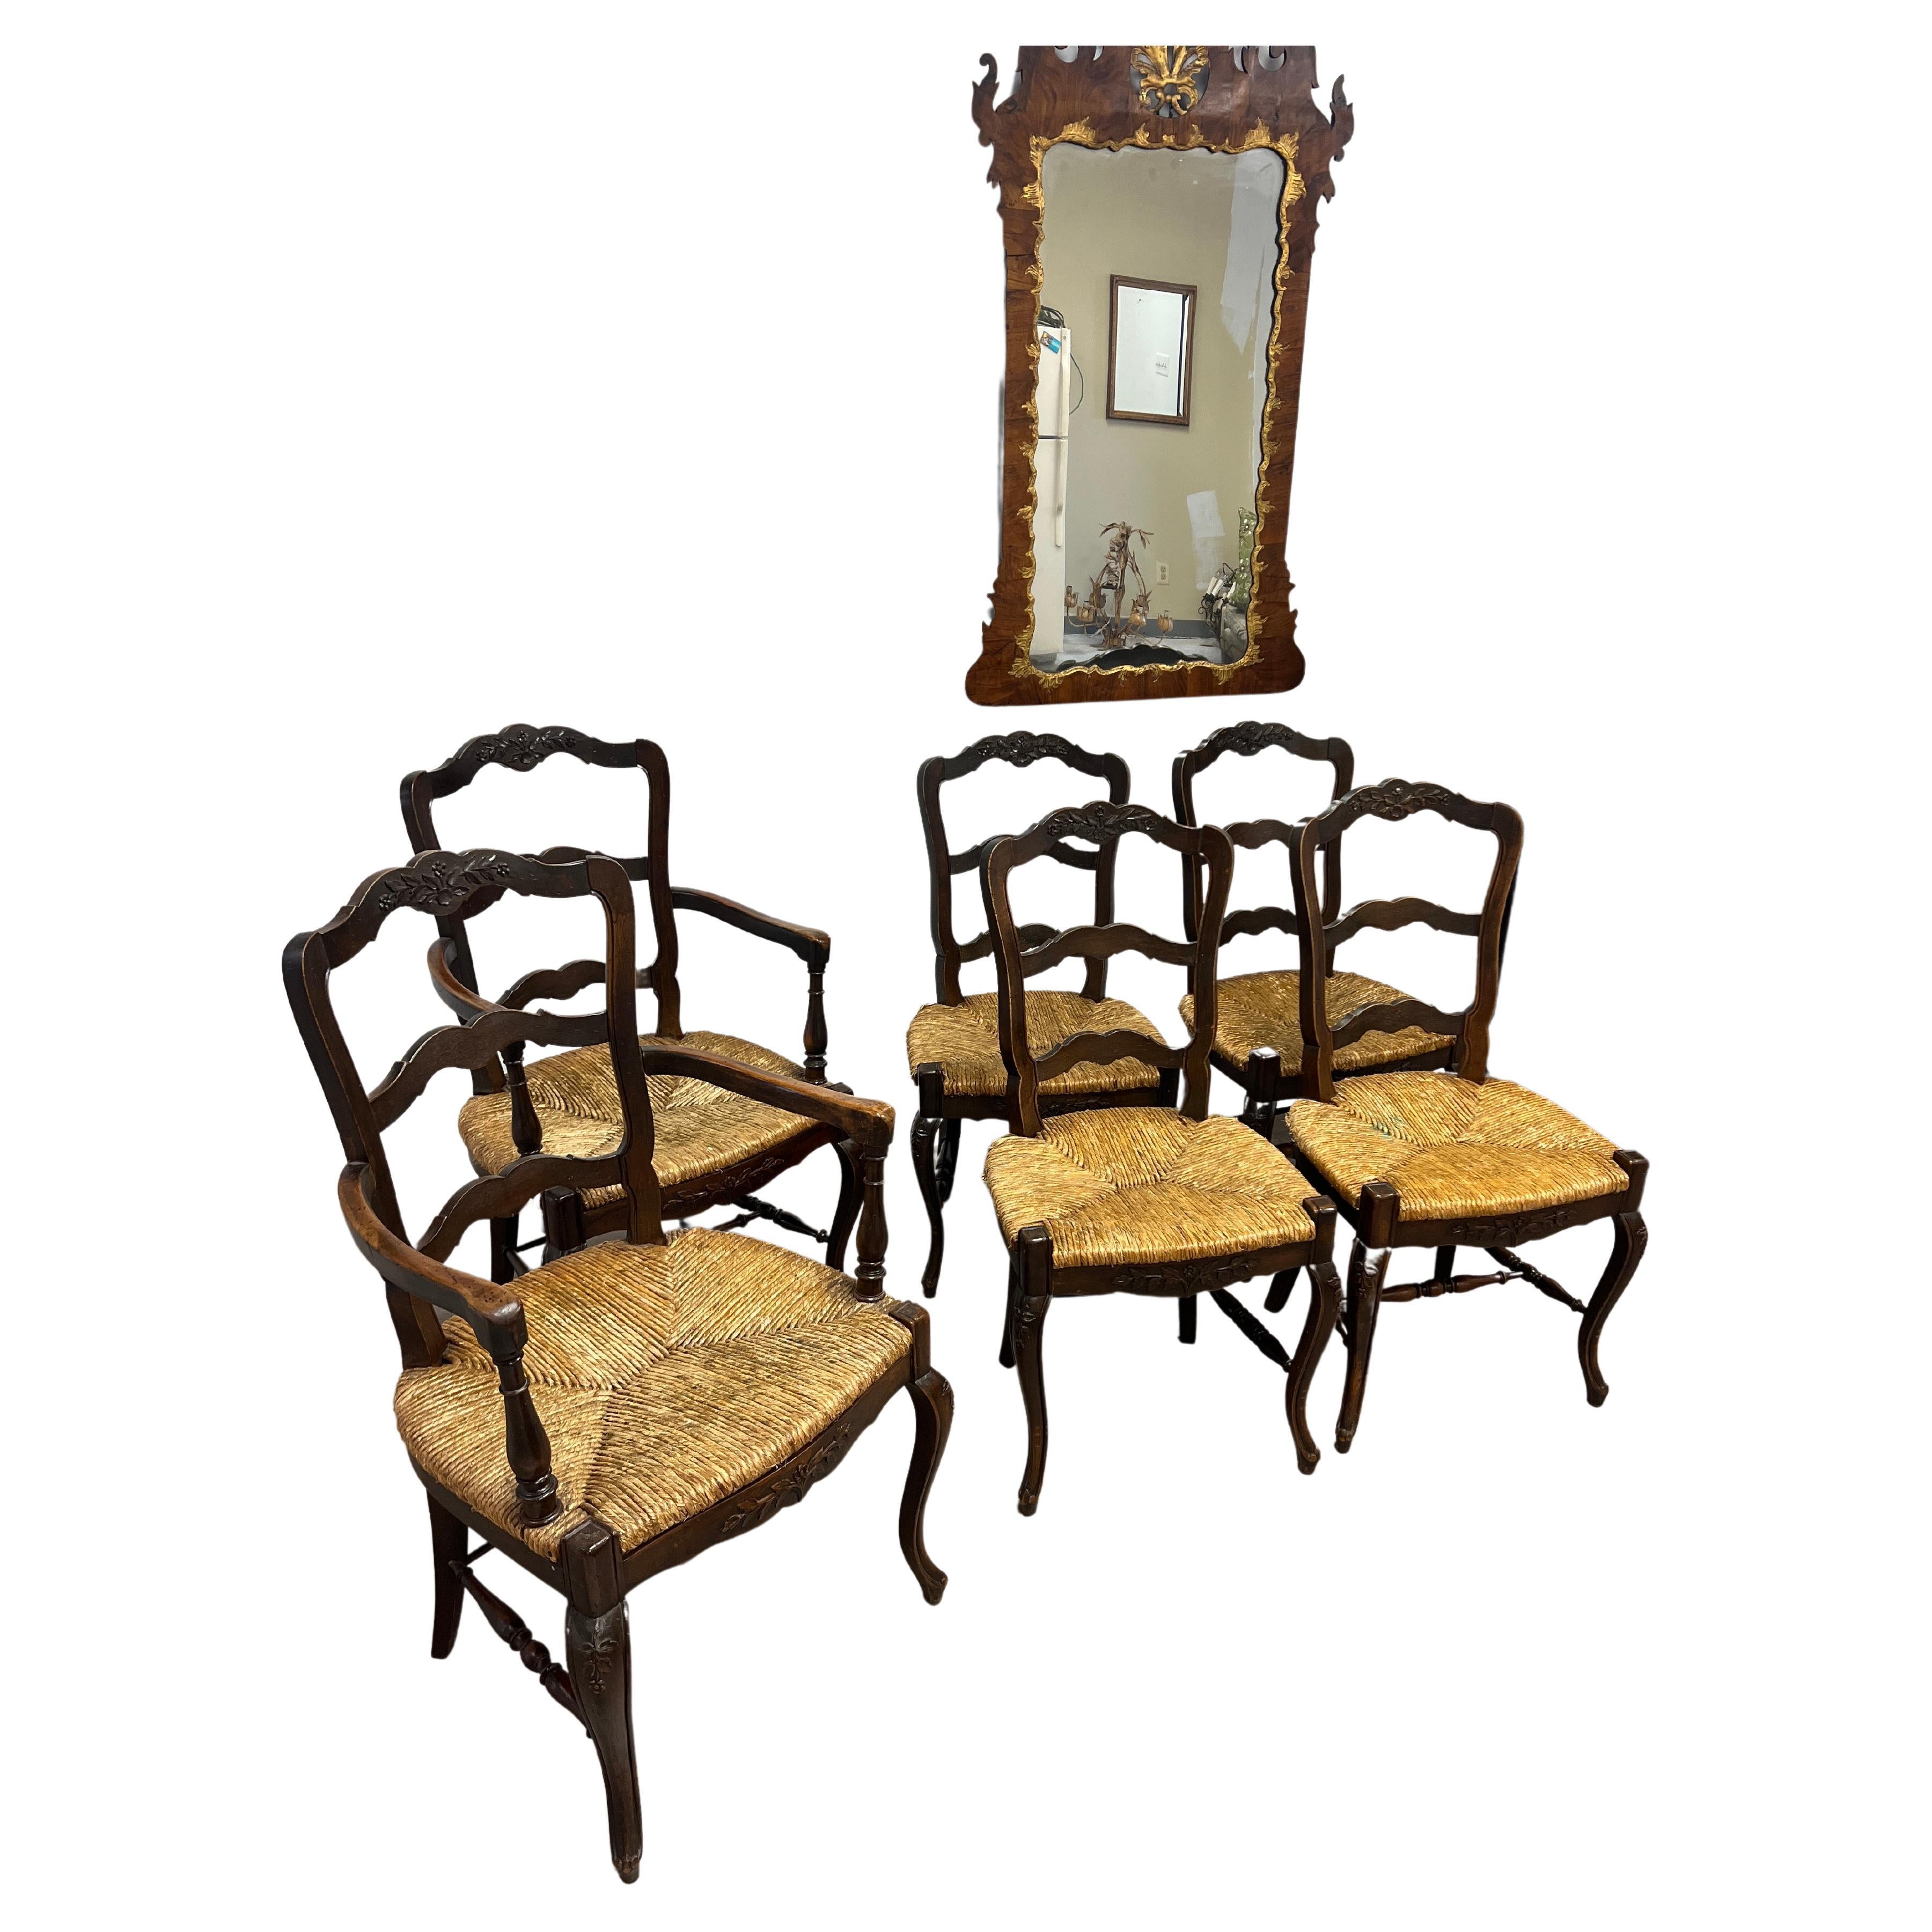 Ein hübsches Set von sechs Stühlen im französischen Stil. Das Set besteht aus zwei Sesseln mit einer Höhe von 38